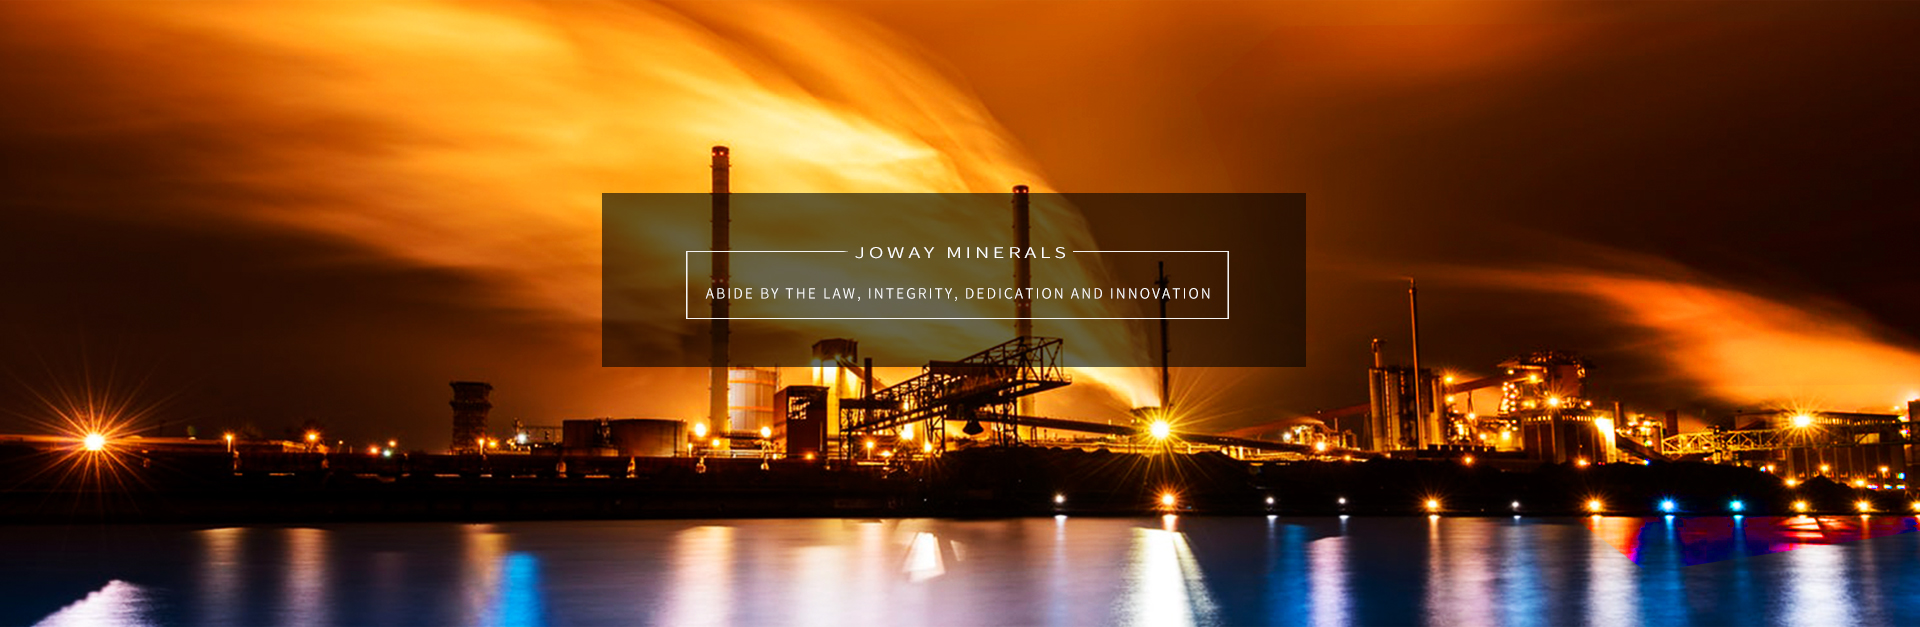 Dalian Joway Minerals Co., Ltd